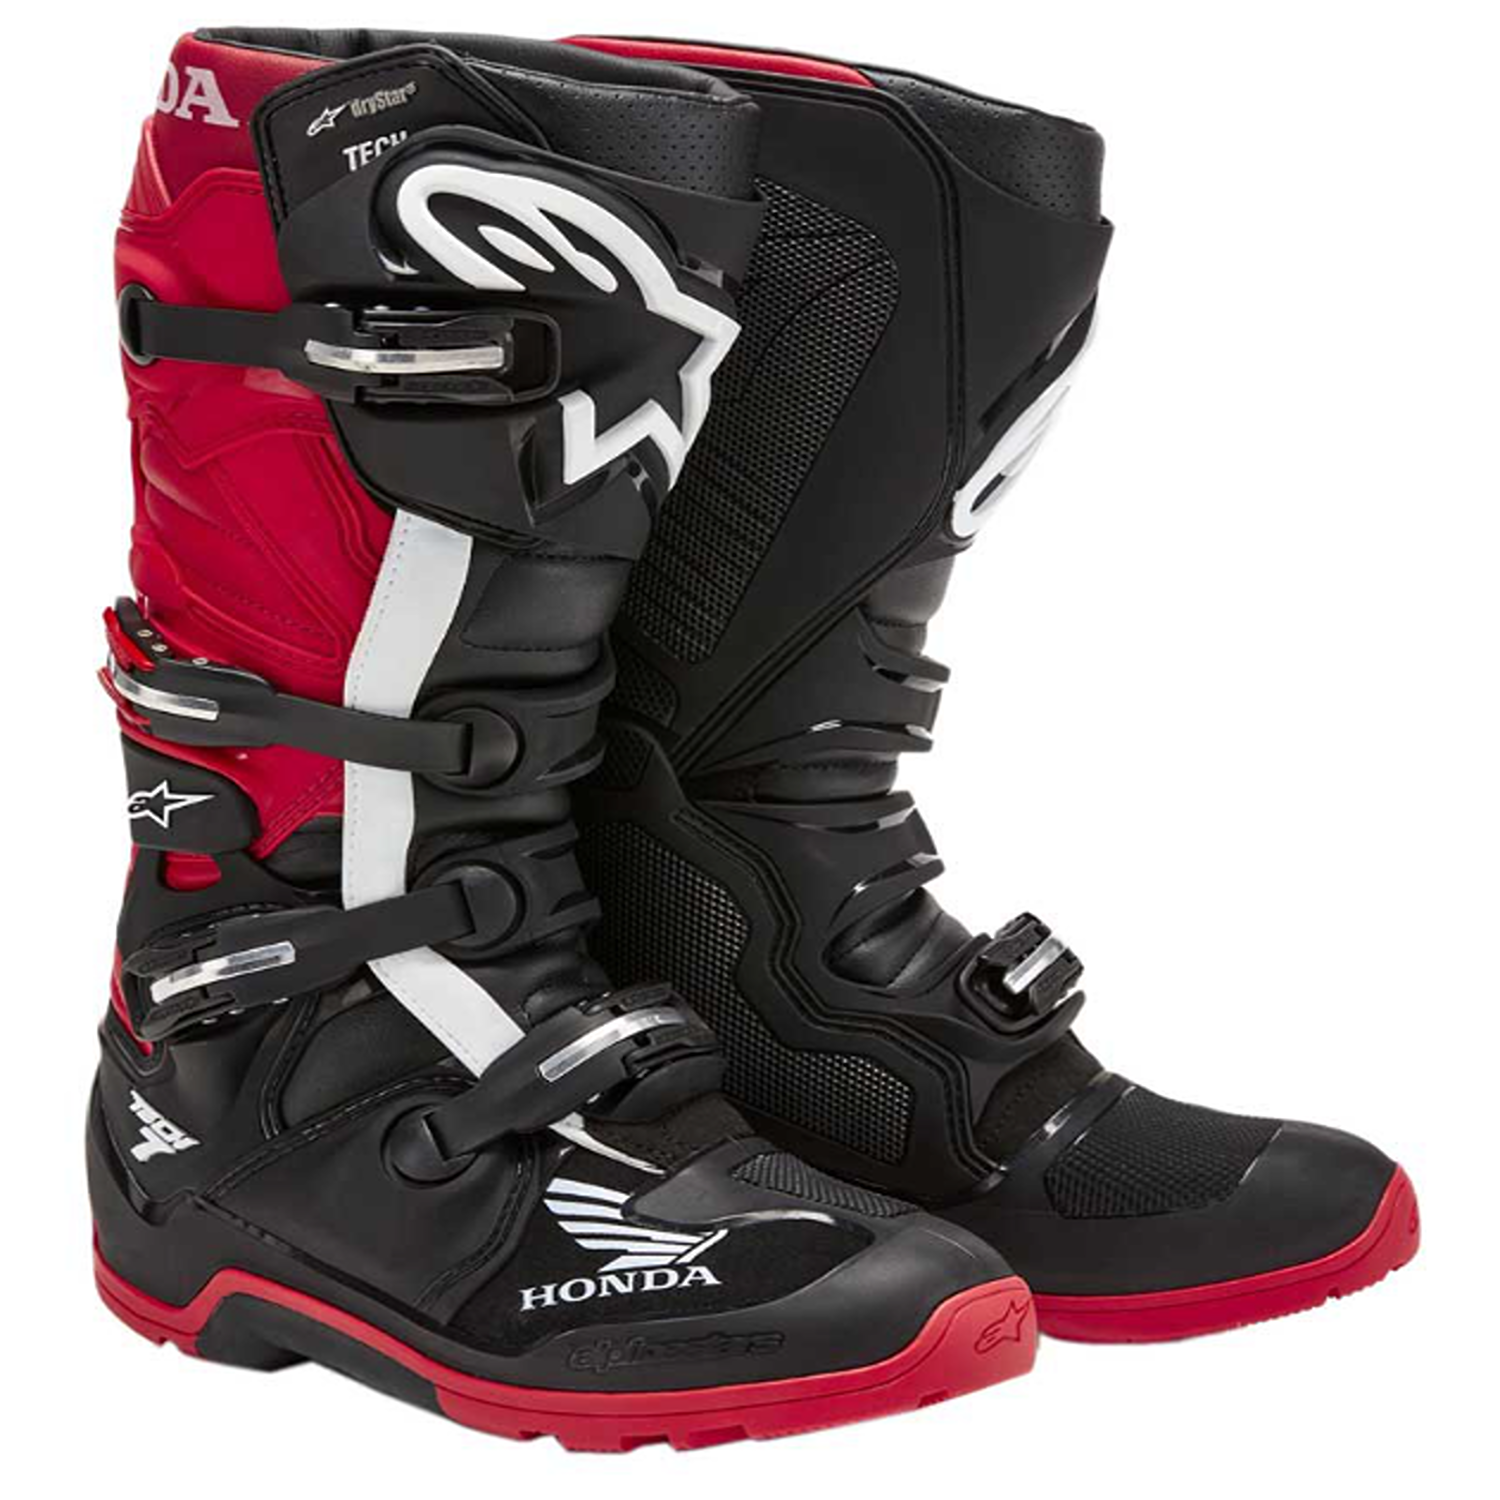 Image of Alpinestars Honda Tech 7 Enduro Drystar Boots Black Bright Red Size US 9 EN